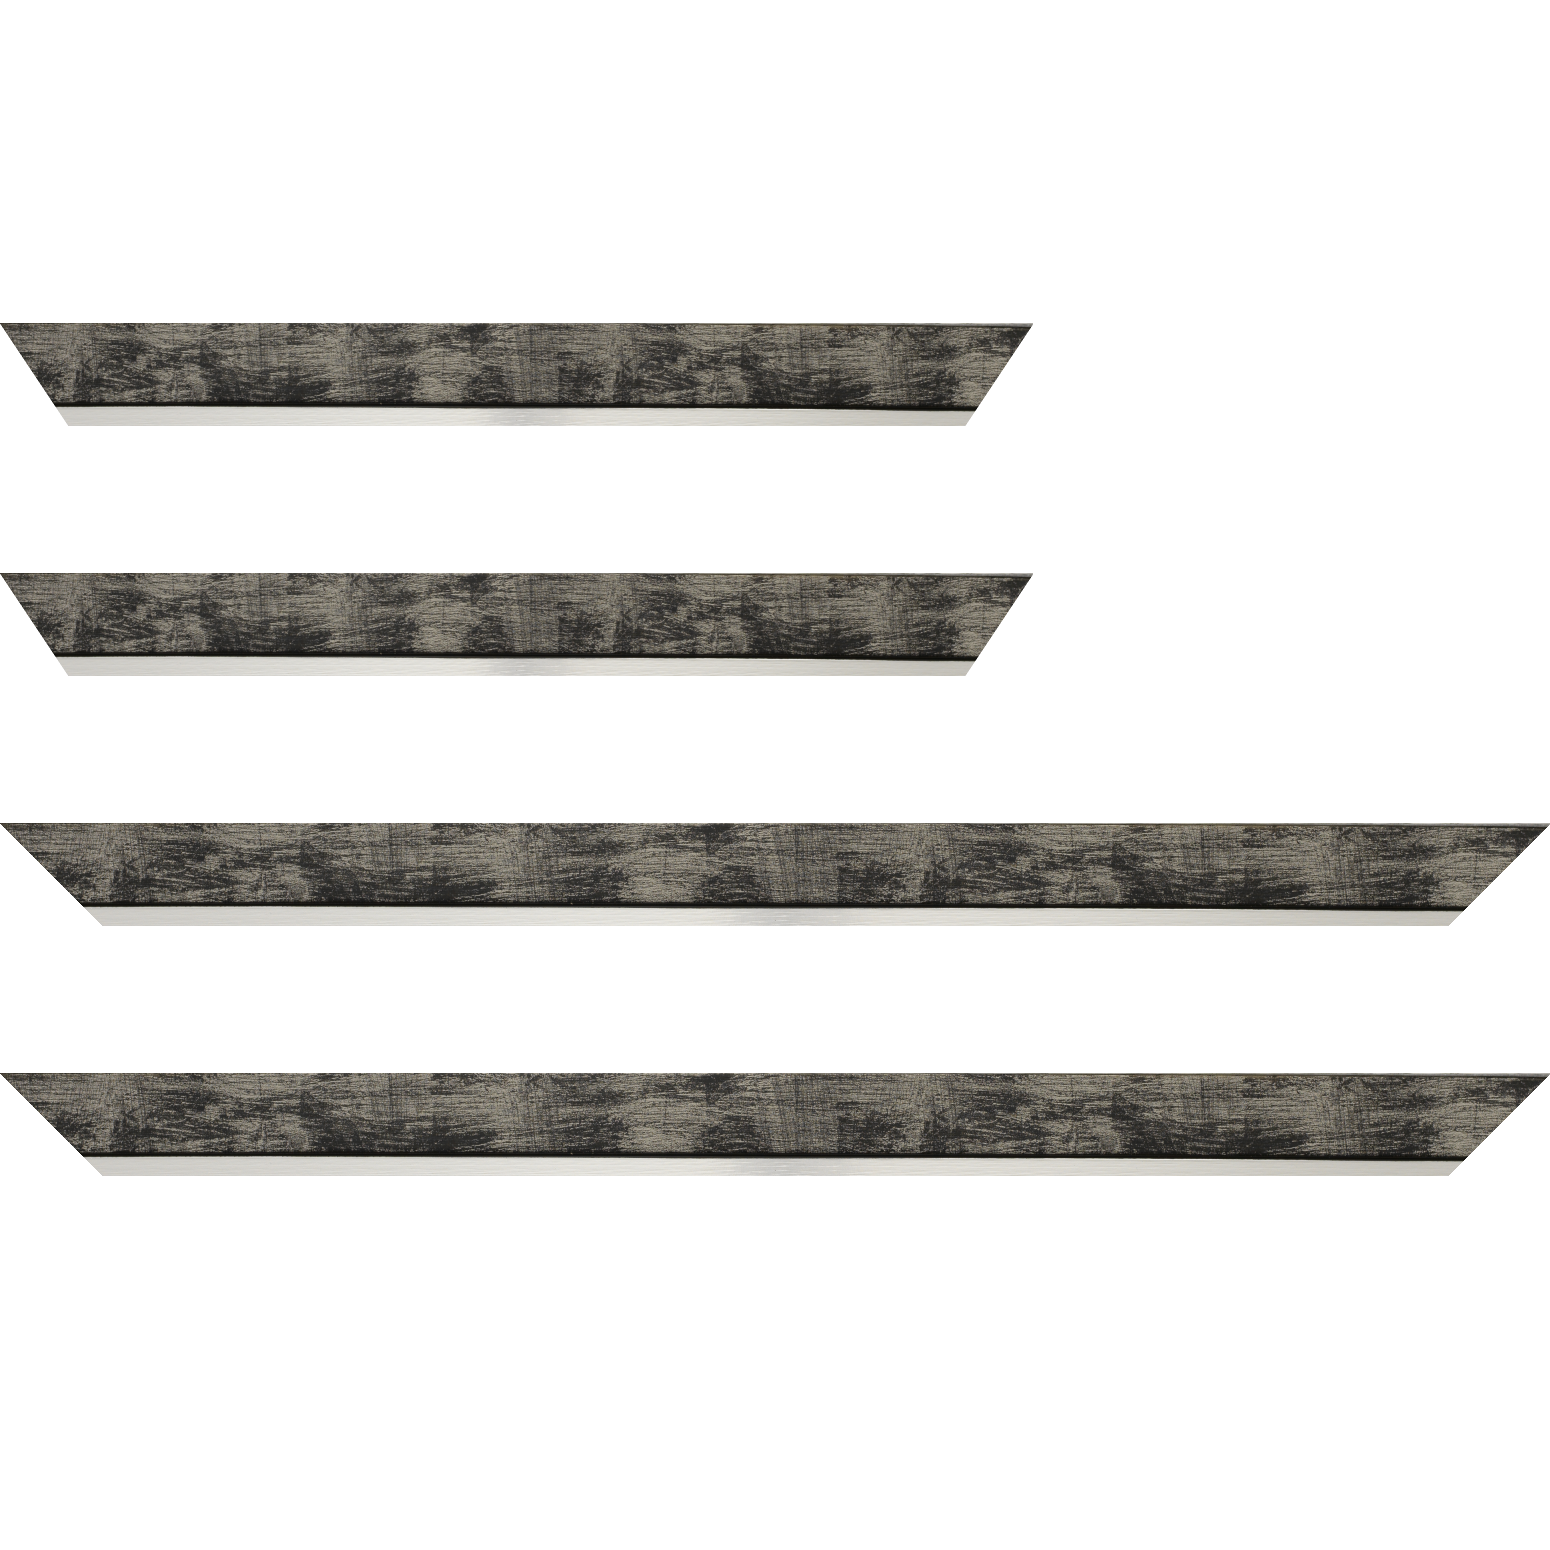 Baguette bois profil plat largeur 3.3cm couleur noir fond argent filet argent - 34x40